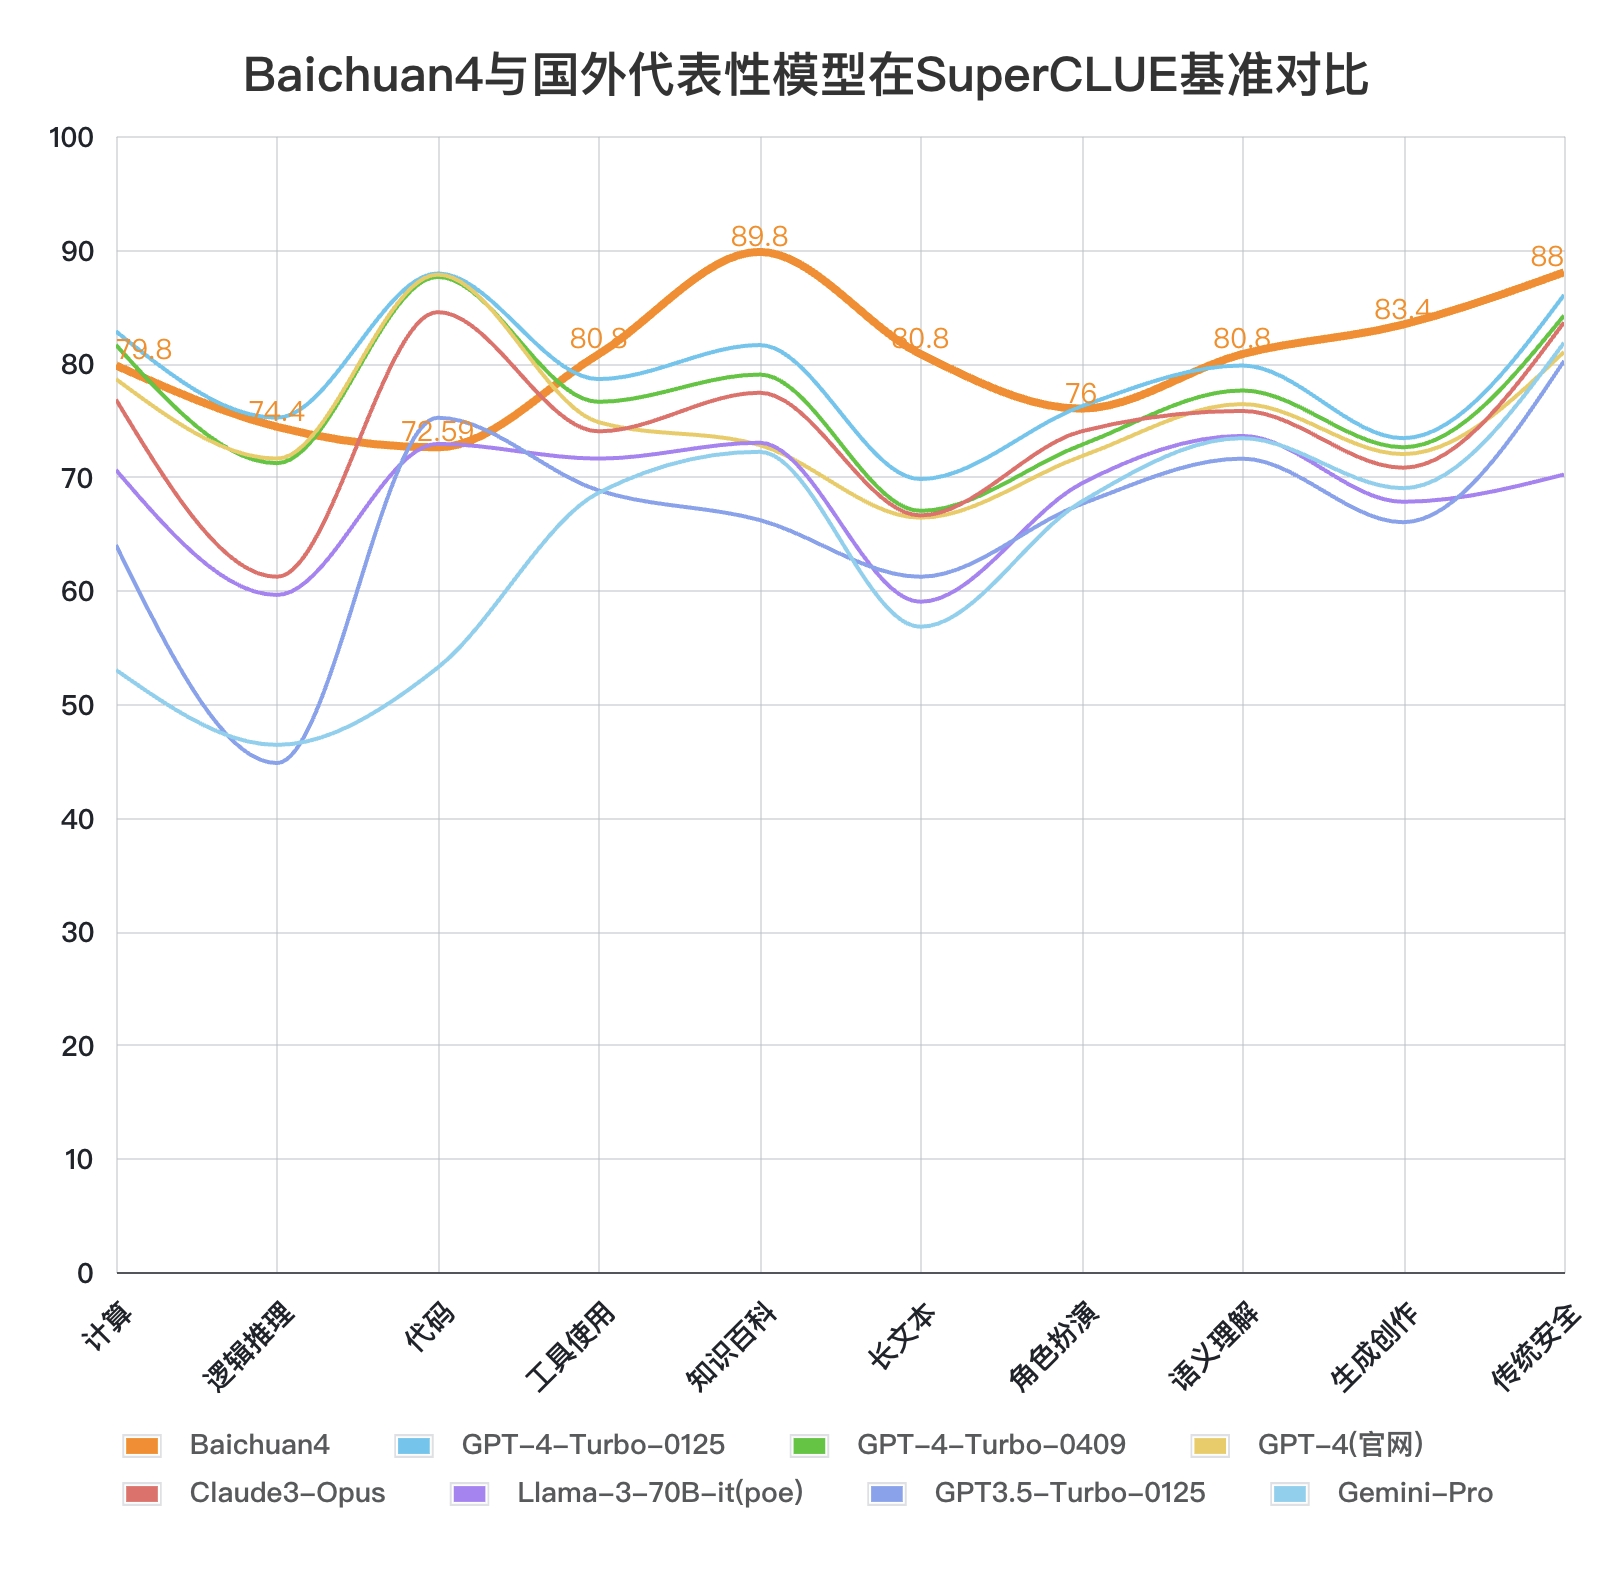 Baichuan 4大模型正式发布，首款AI助手应用“百小应”同步上线